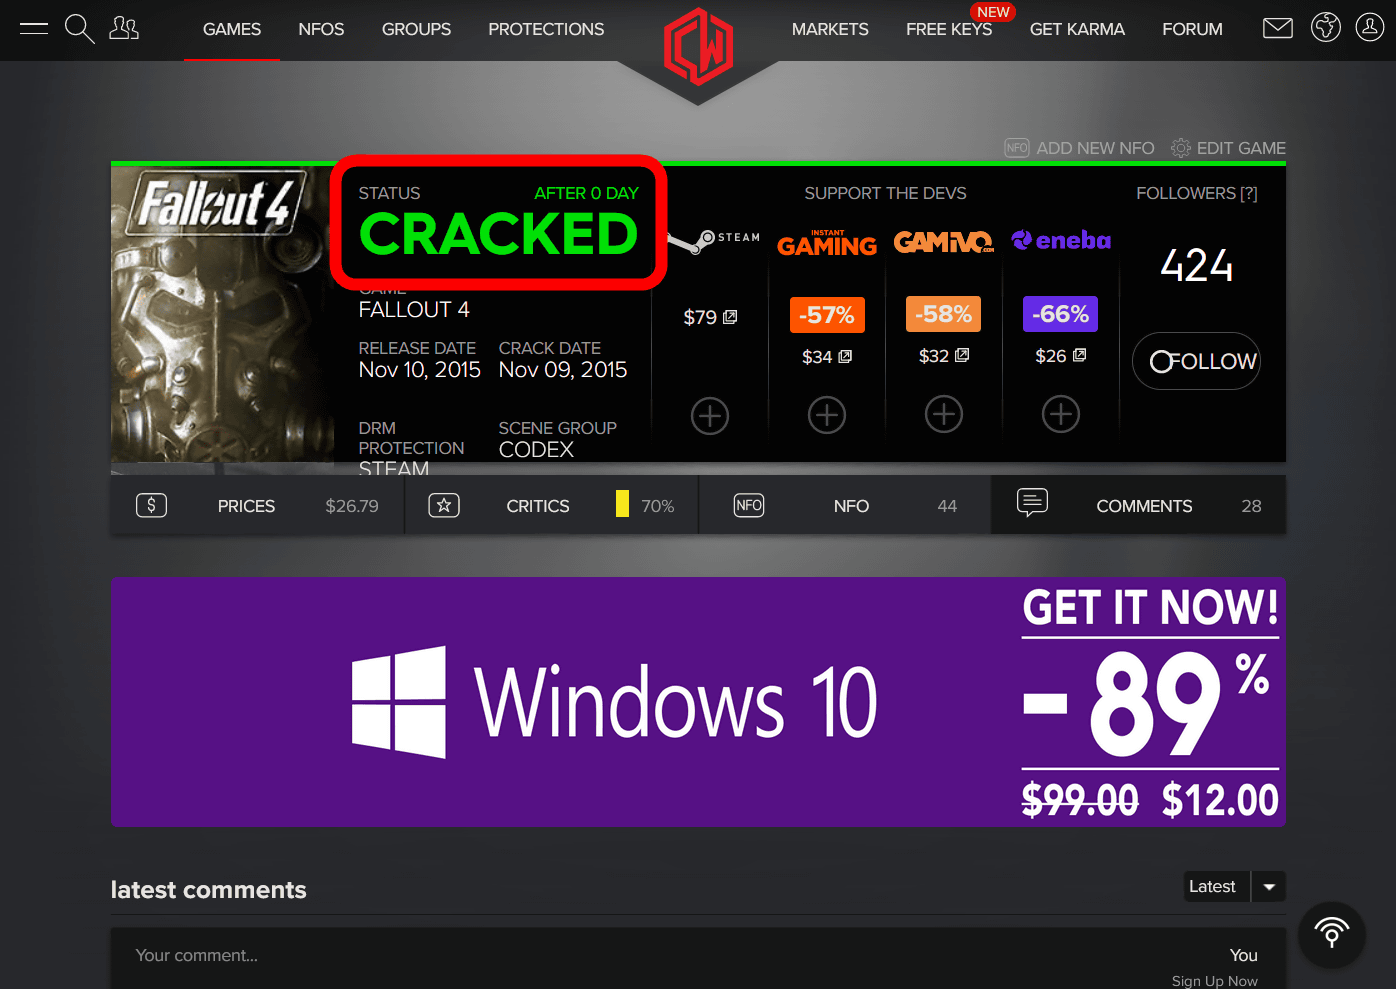 Crack Status  Updated Cracked Status of Games